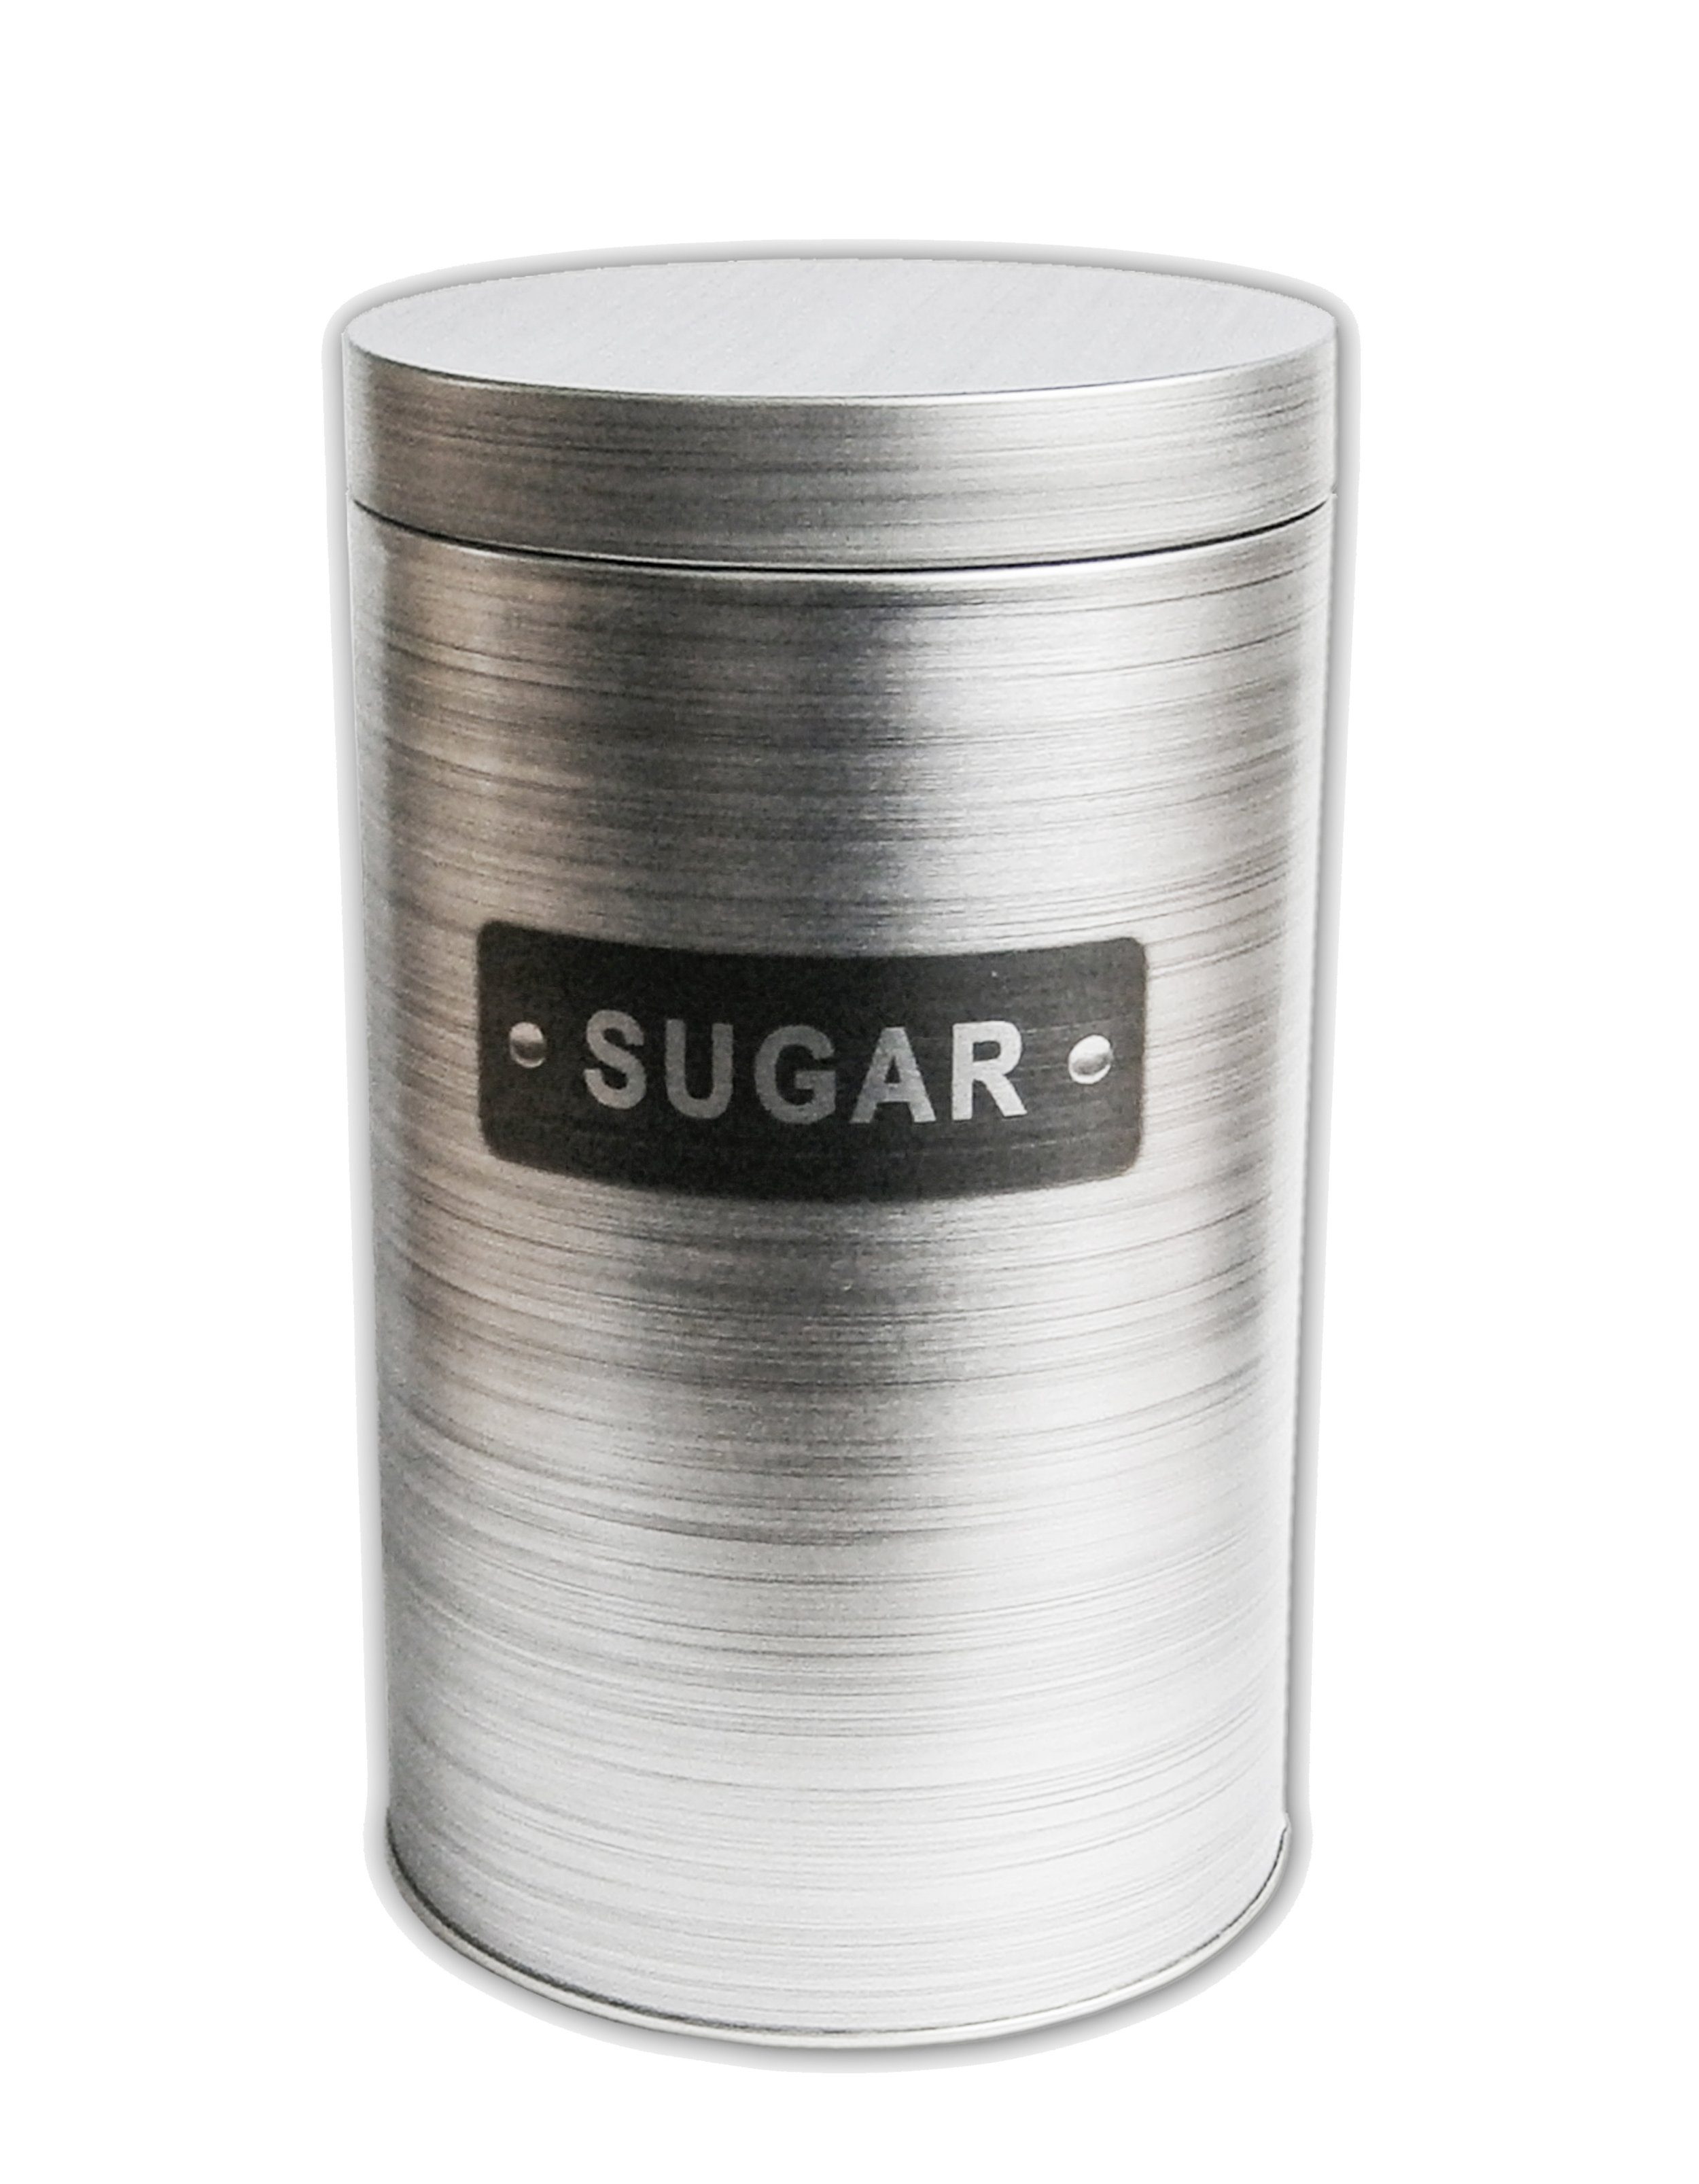 Zuckerdose BLECHDOSE "Sugar" 18cm Alu Zuckerdose Vorratsdose 89 (Silber), Aufbewahrungsdose Dose